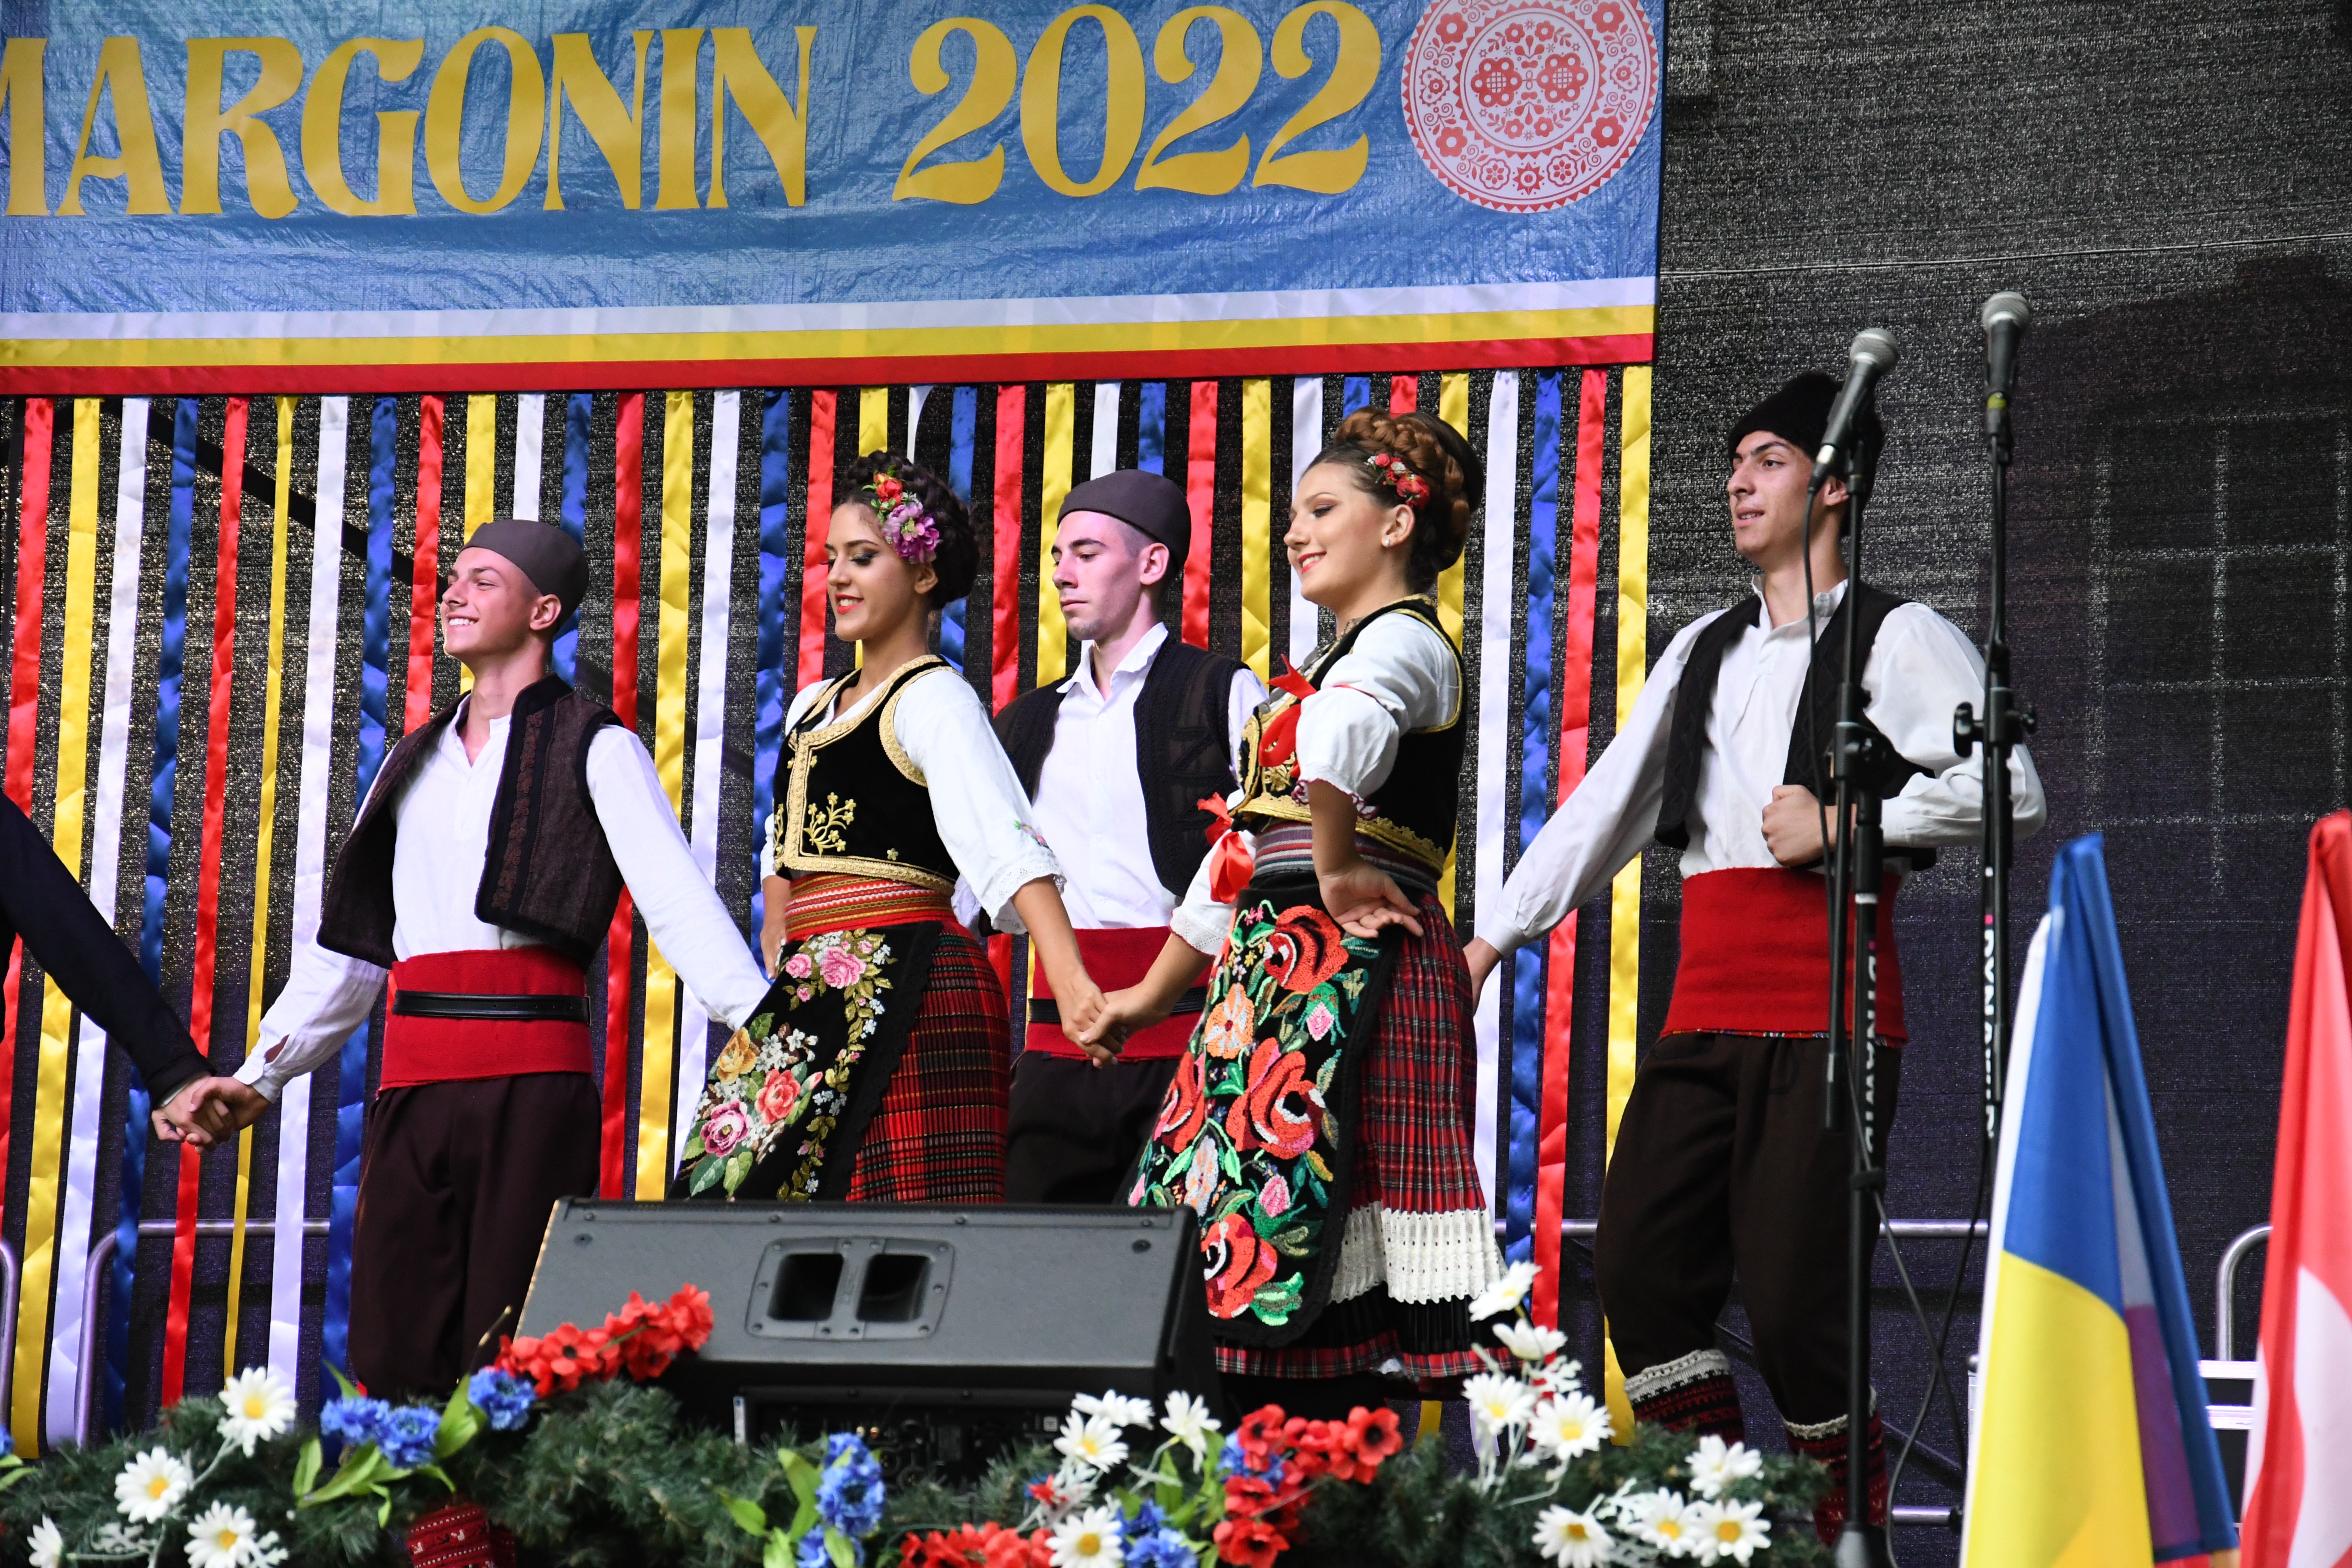 Zespół Zavicaj z Serbii na scenie w komplecie ok. 5 osób, dziewczęta z przodu i chłopcy z tyłu. Ubrani w tradycyjne stroje ludowe. Z tyłu sceny wielki baner z napisem InterFolk Margonin 2022 oraz na pierwszym planie flagi krajów biorących udział w festiwalu.